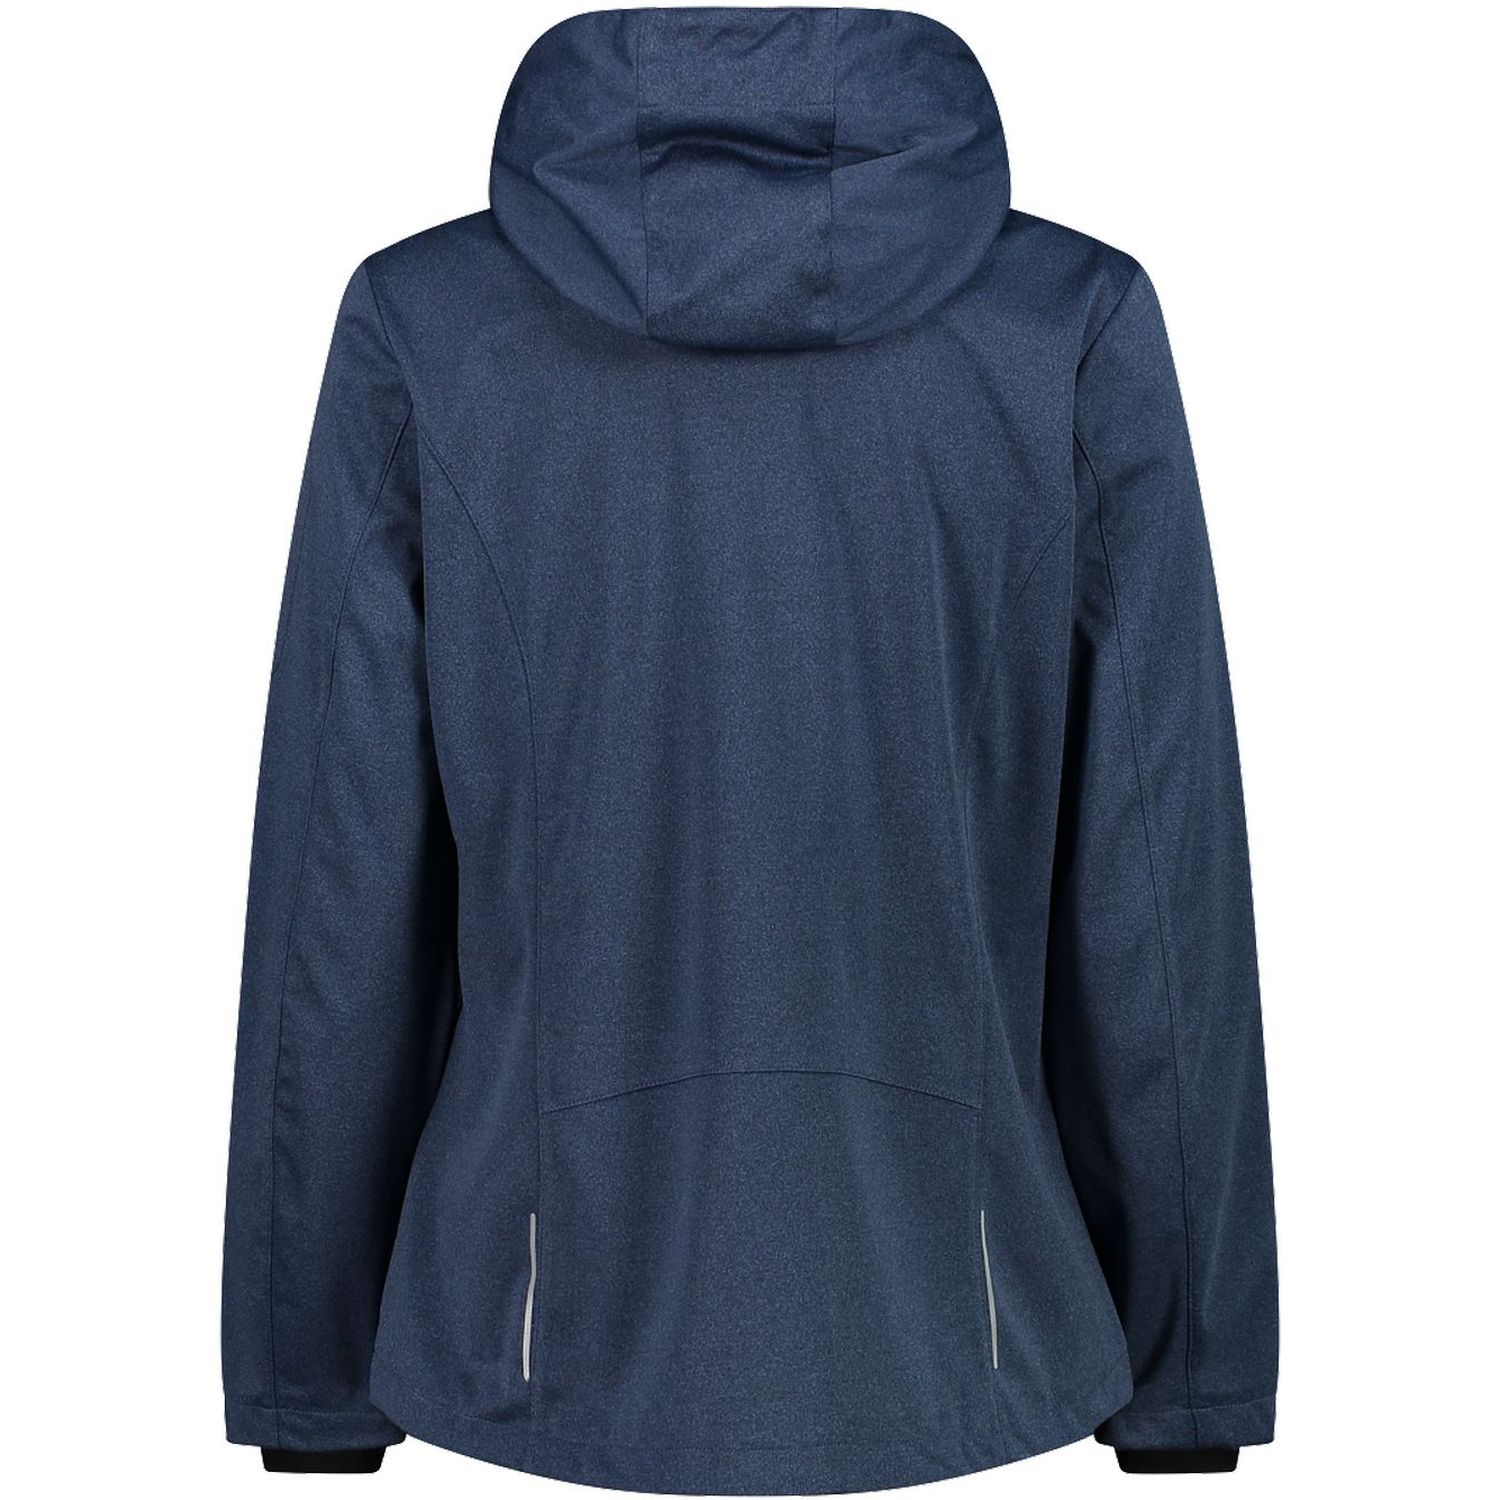 CMP Women Jacket Softshell 39A5016M Softshelljacken b.blue mel-cielo jetzt  bei Berger kaufen